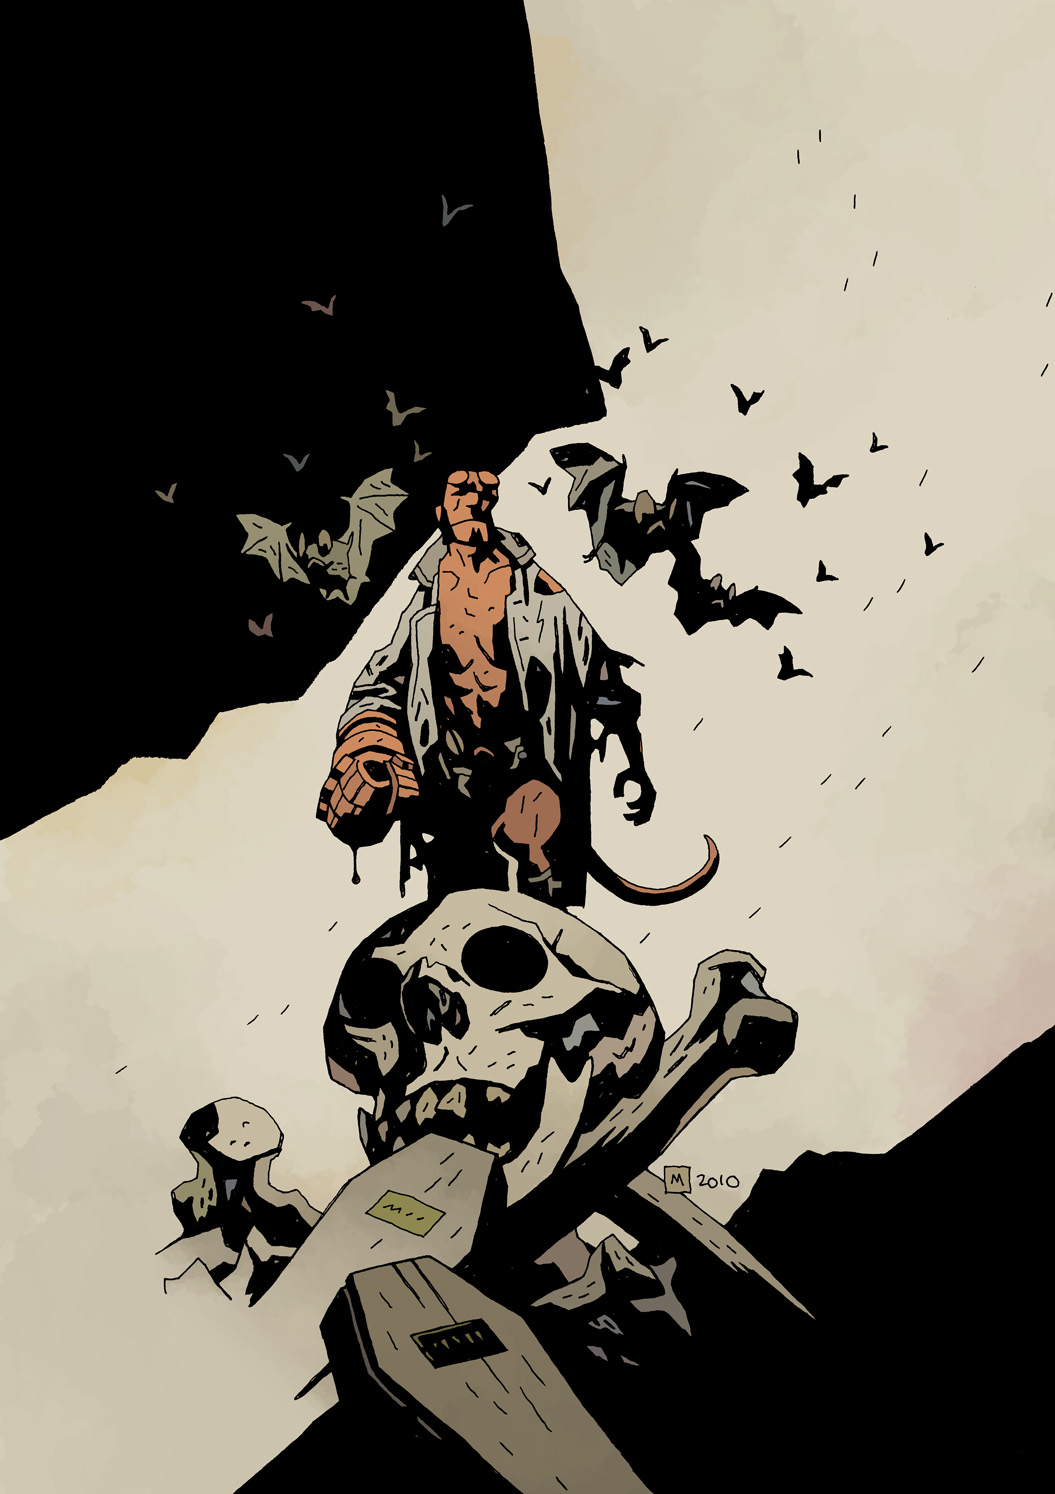 Hellboy by Mike Mignola